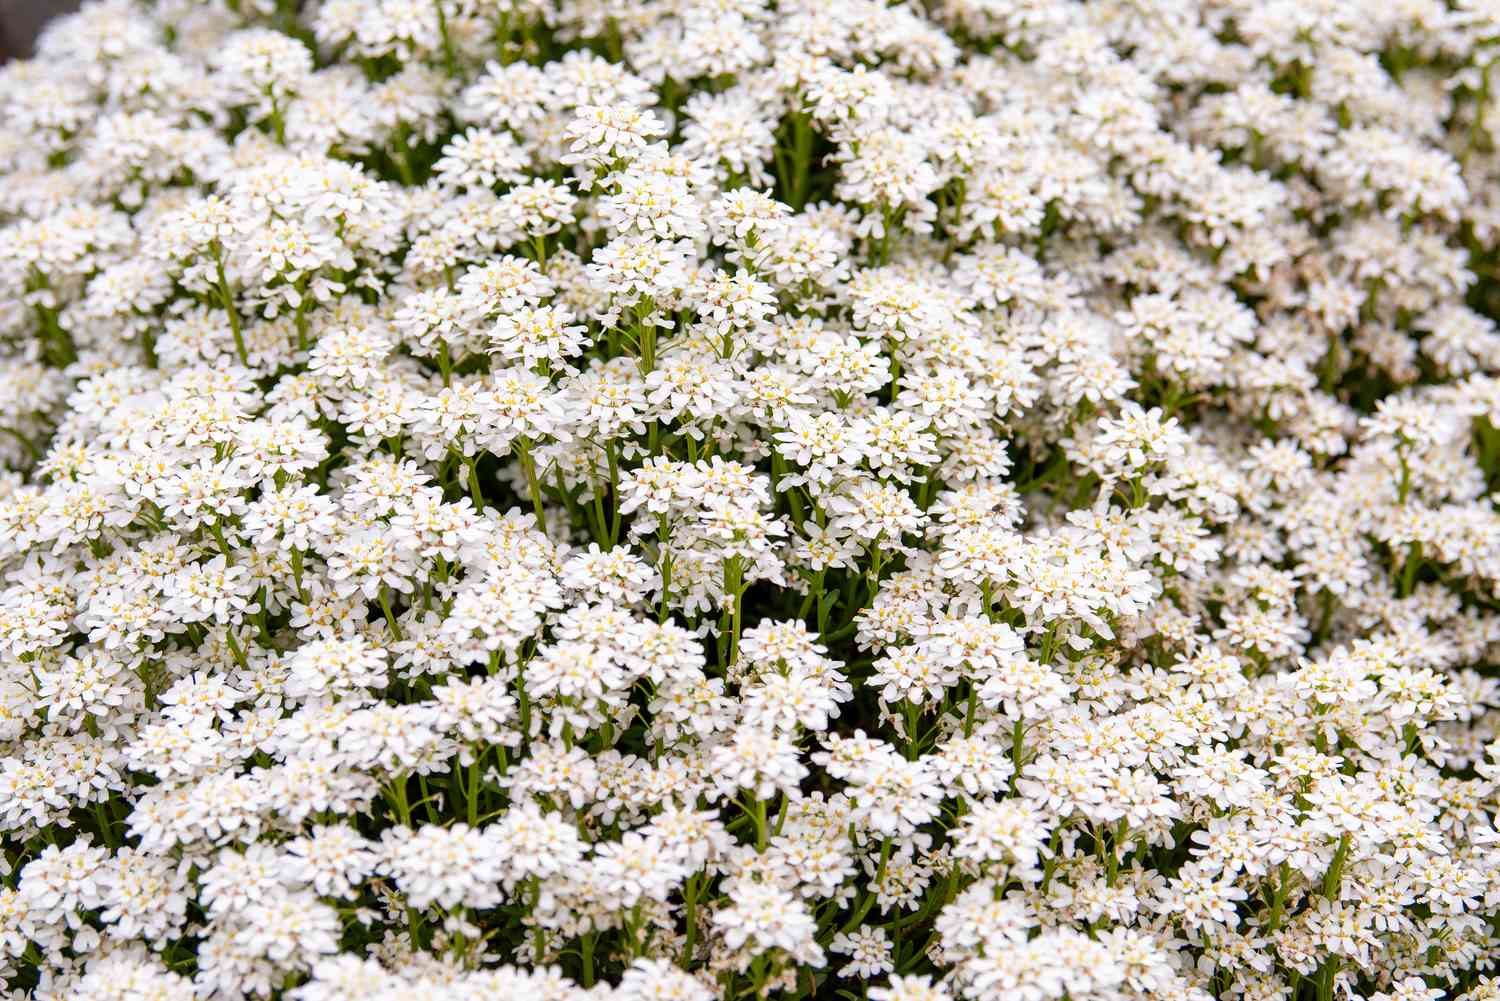 Candytuft planta com pequenas flores brancas agrupadas densamente